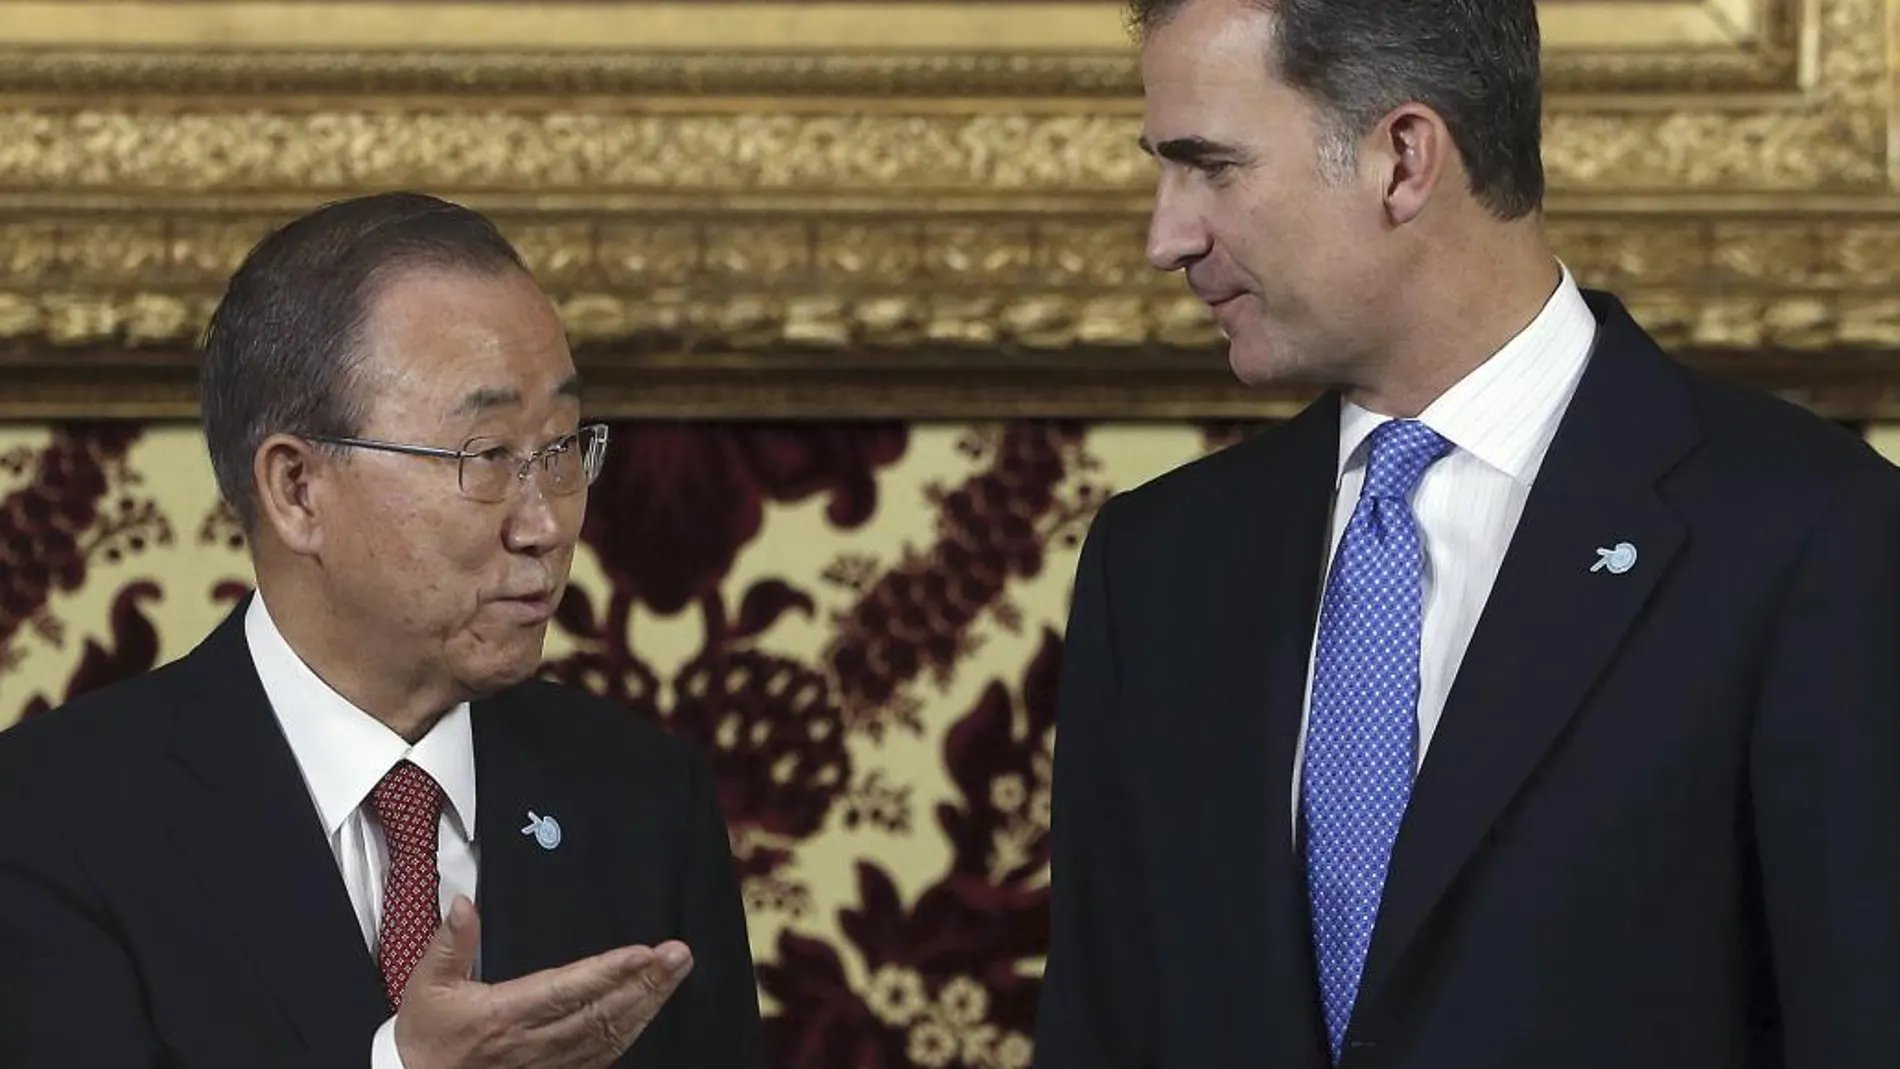 El Rey Felipe VI, junto al secretario general de la ONU, Ban Ki-moon, en el Palacio Real